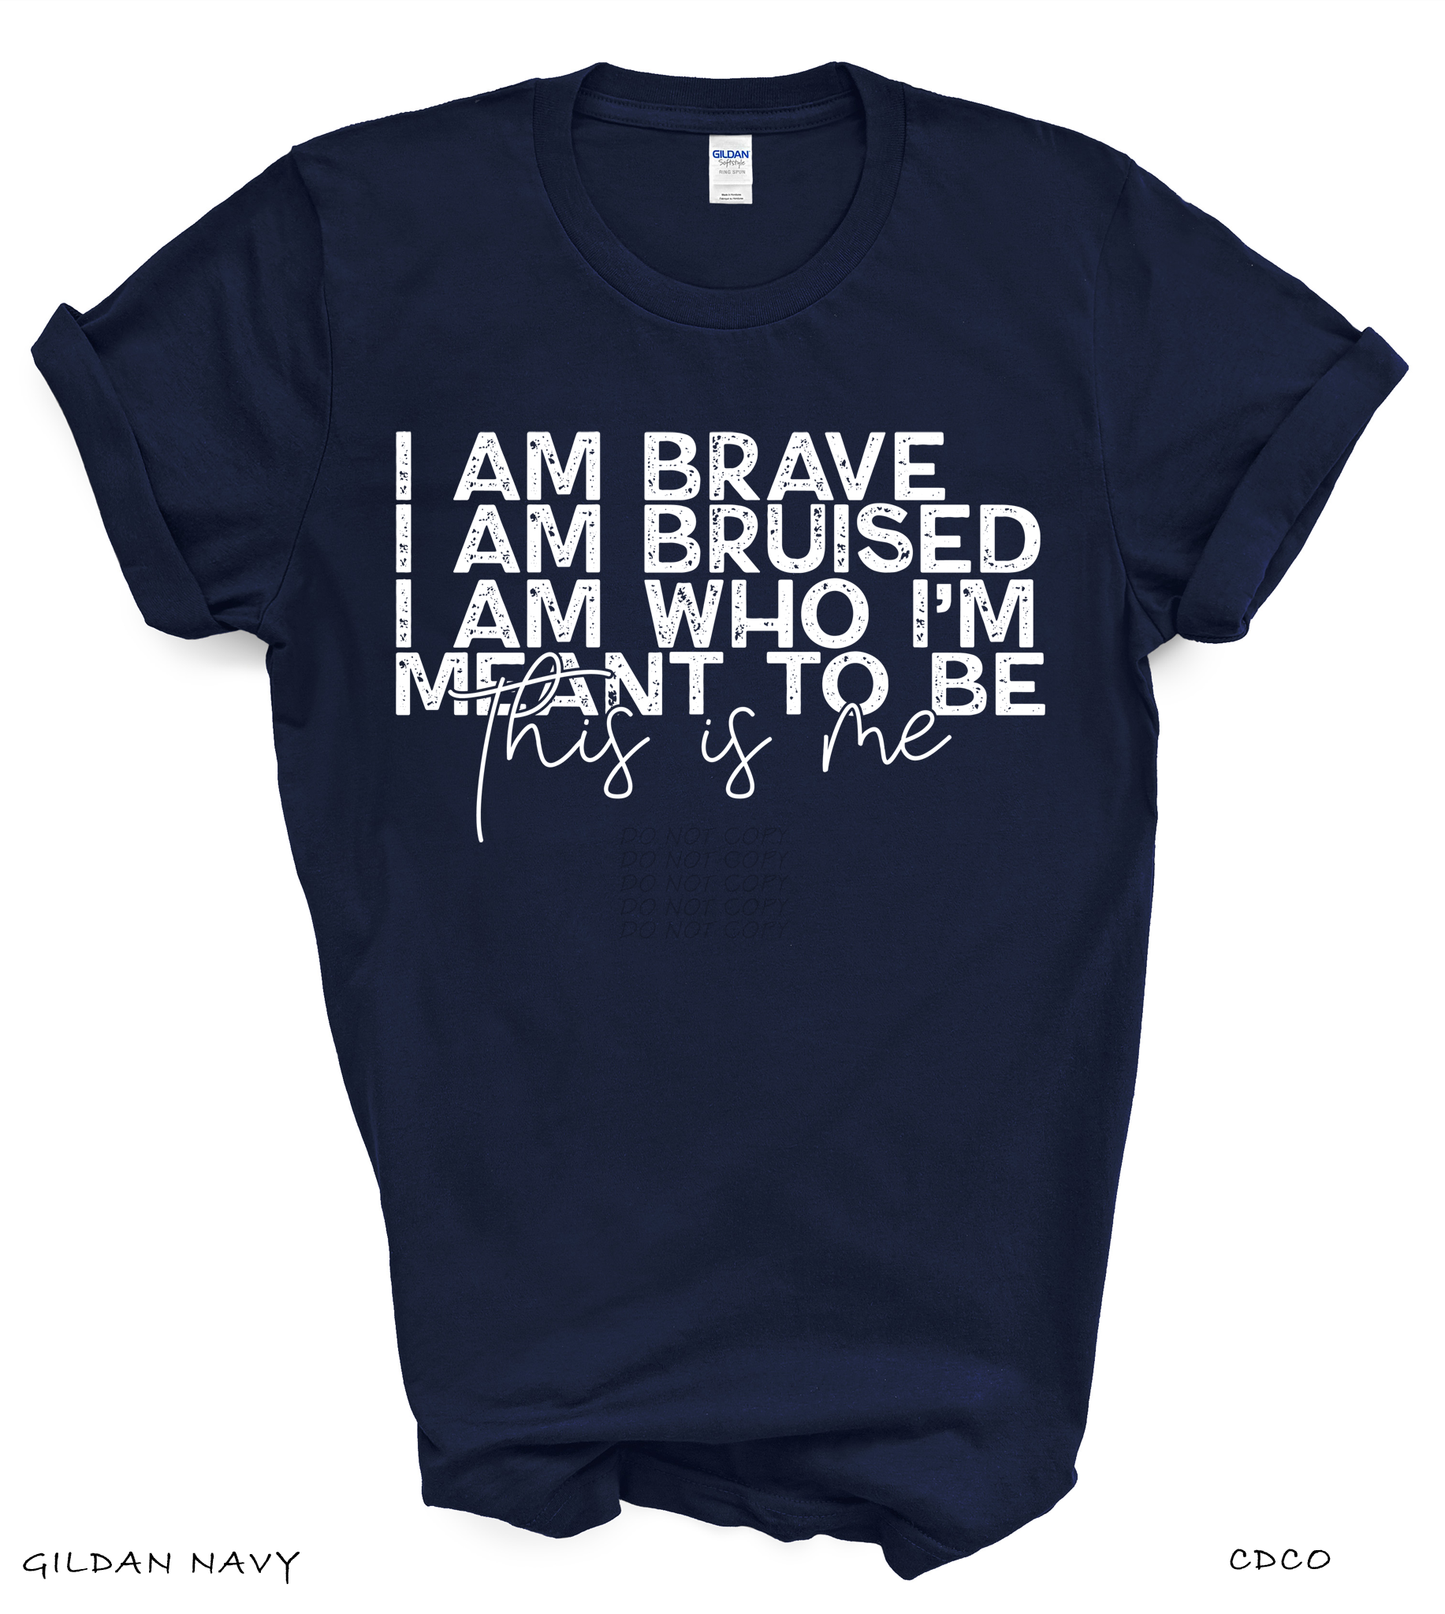 I Am Brave (325°)